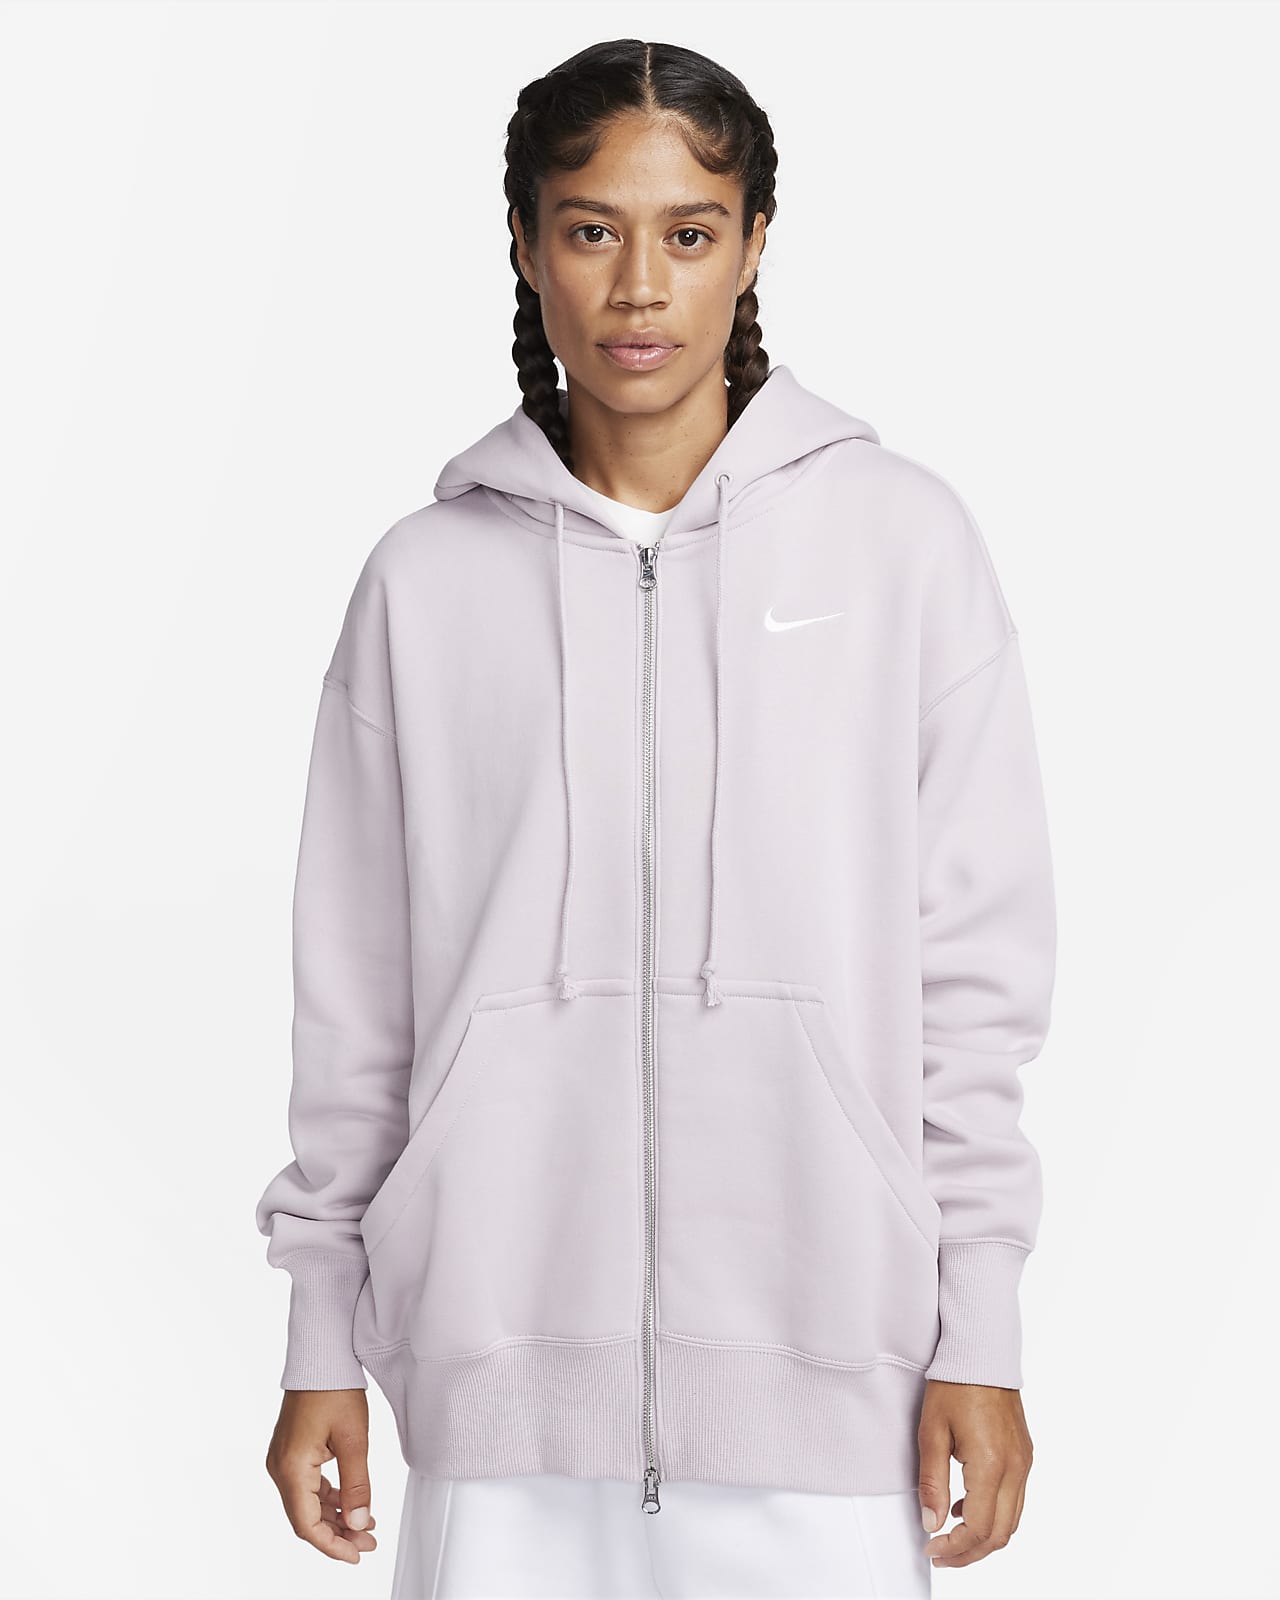 Γυναικεία μπλούζα με κουκούλα και φερμουάρ σε όλο το μήκος σε φαρδιά γραμμή Nike Sportswear Phoenix Fleece